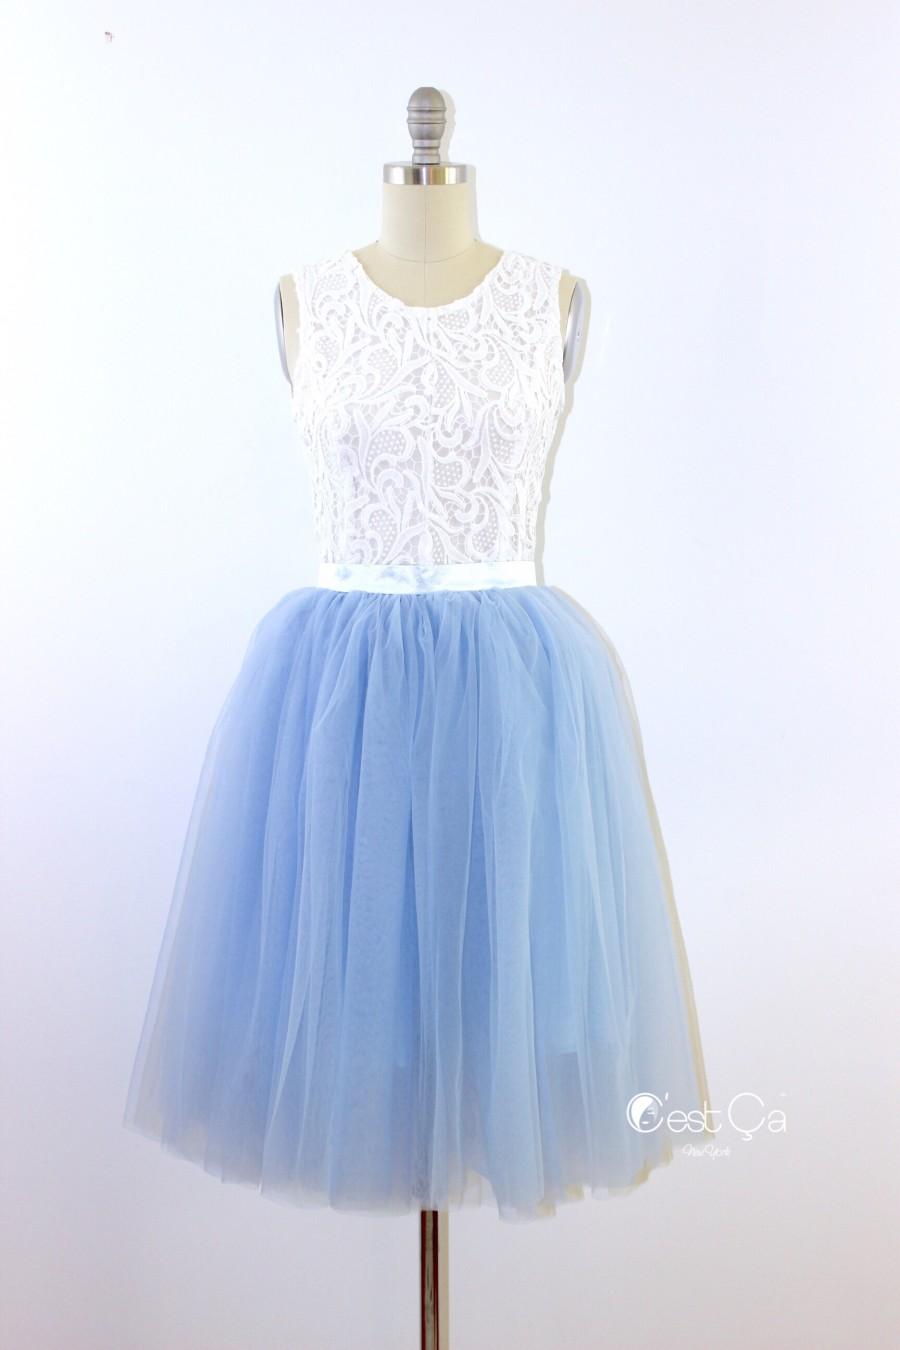 Wedding - Colette Serenity Blue Tulle Skirt - Length 26" - C'est Ça New York